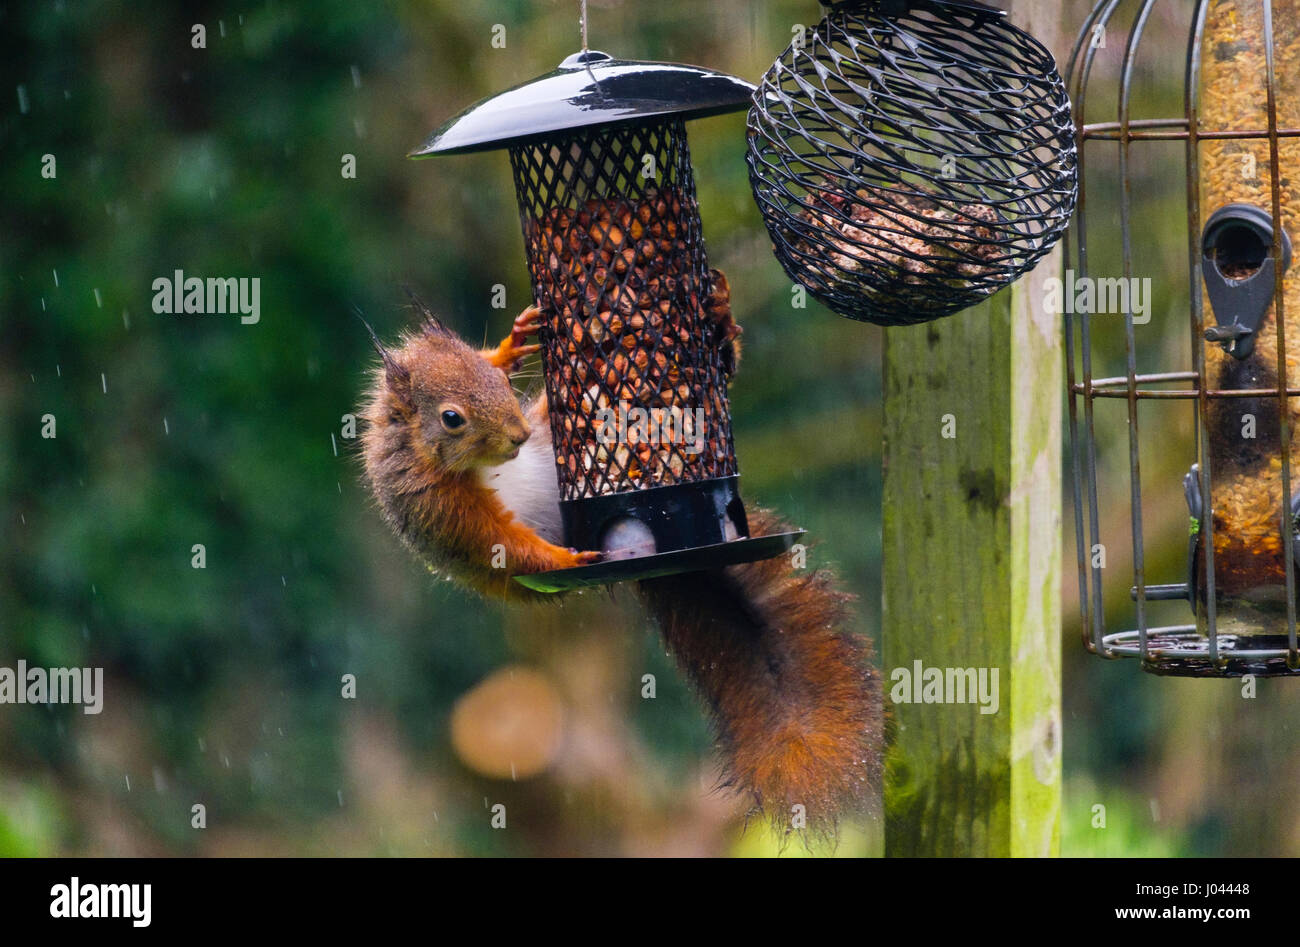 Un écureuil roux (Sciurus vulgaris) de manger des arachides dans un écrou sur la pendaison d'un tableau d'oiseaux dans le jardin intérieur de la nature dans la pluie. Anglesey Pays de Galles Royaume-uni Grande-Bretagne Banque D'Images